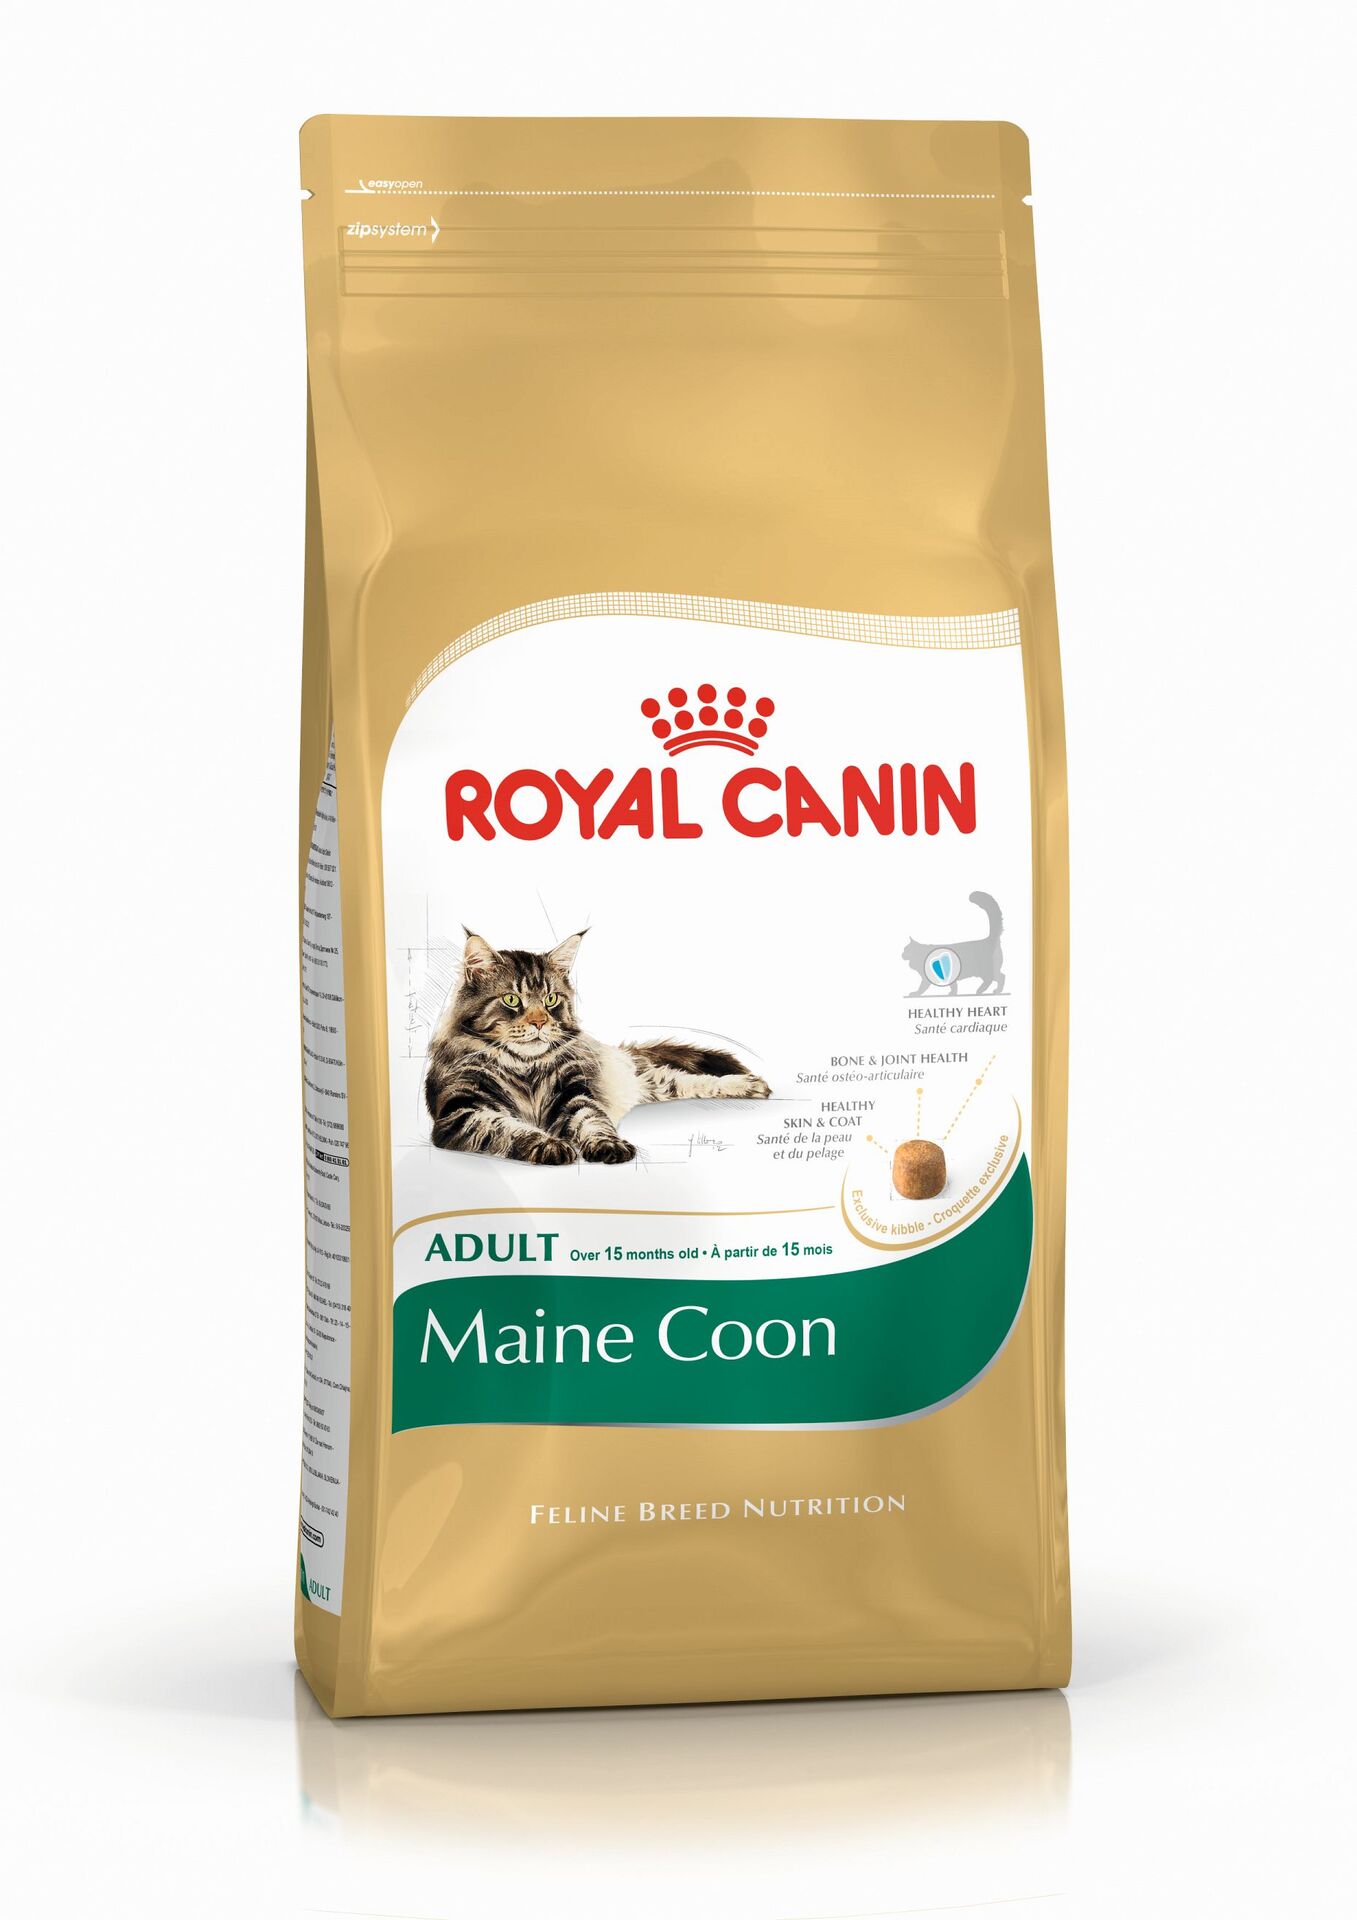 Royal Canin Feline Maine Coon 31